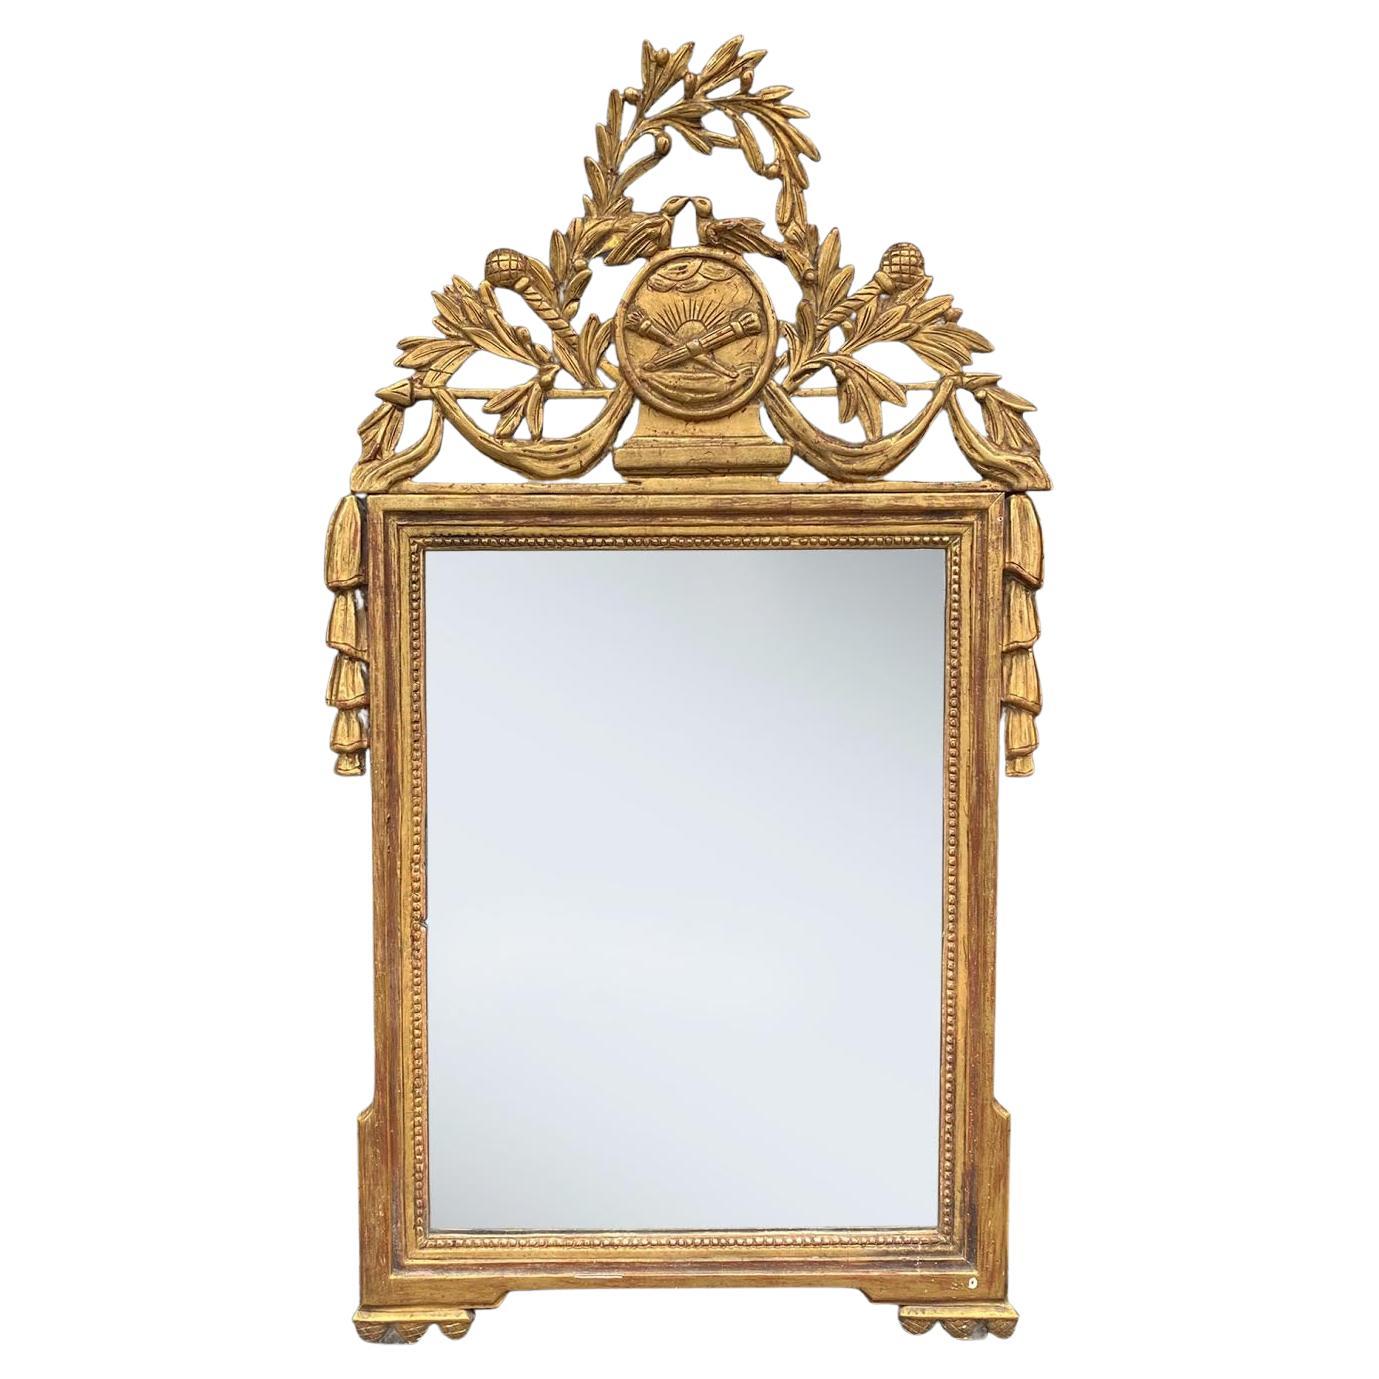 Fine 18th Century French Gilt Wood Framed Wall Mirror